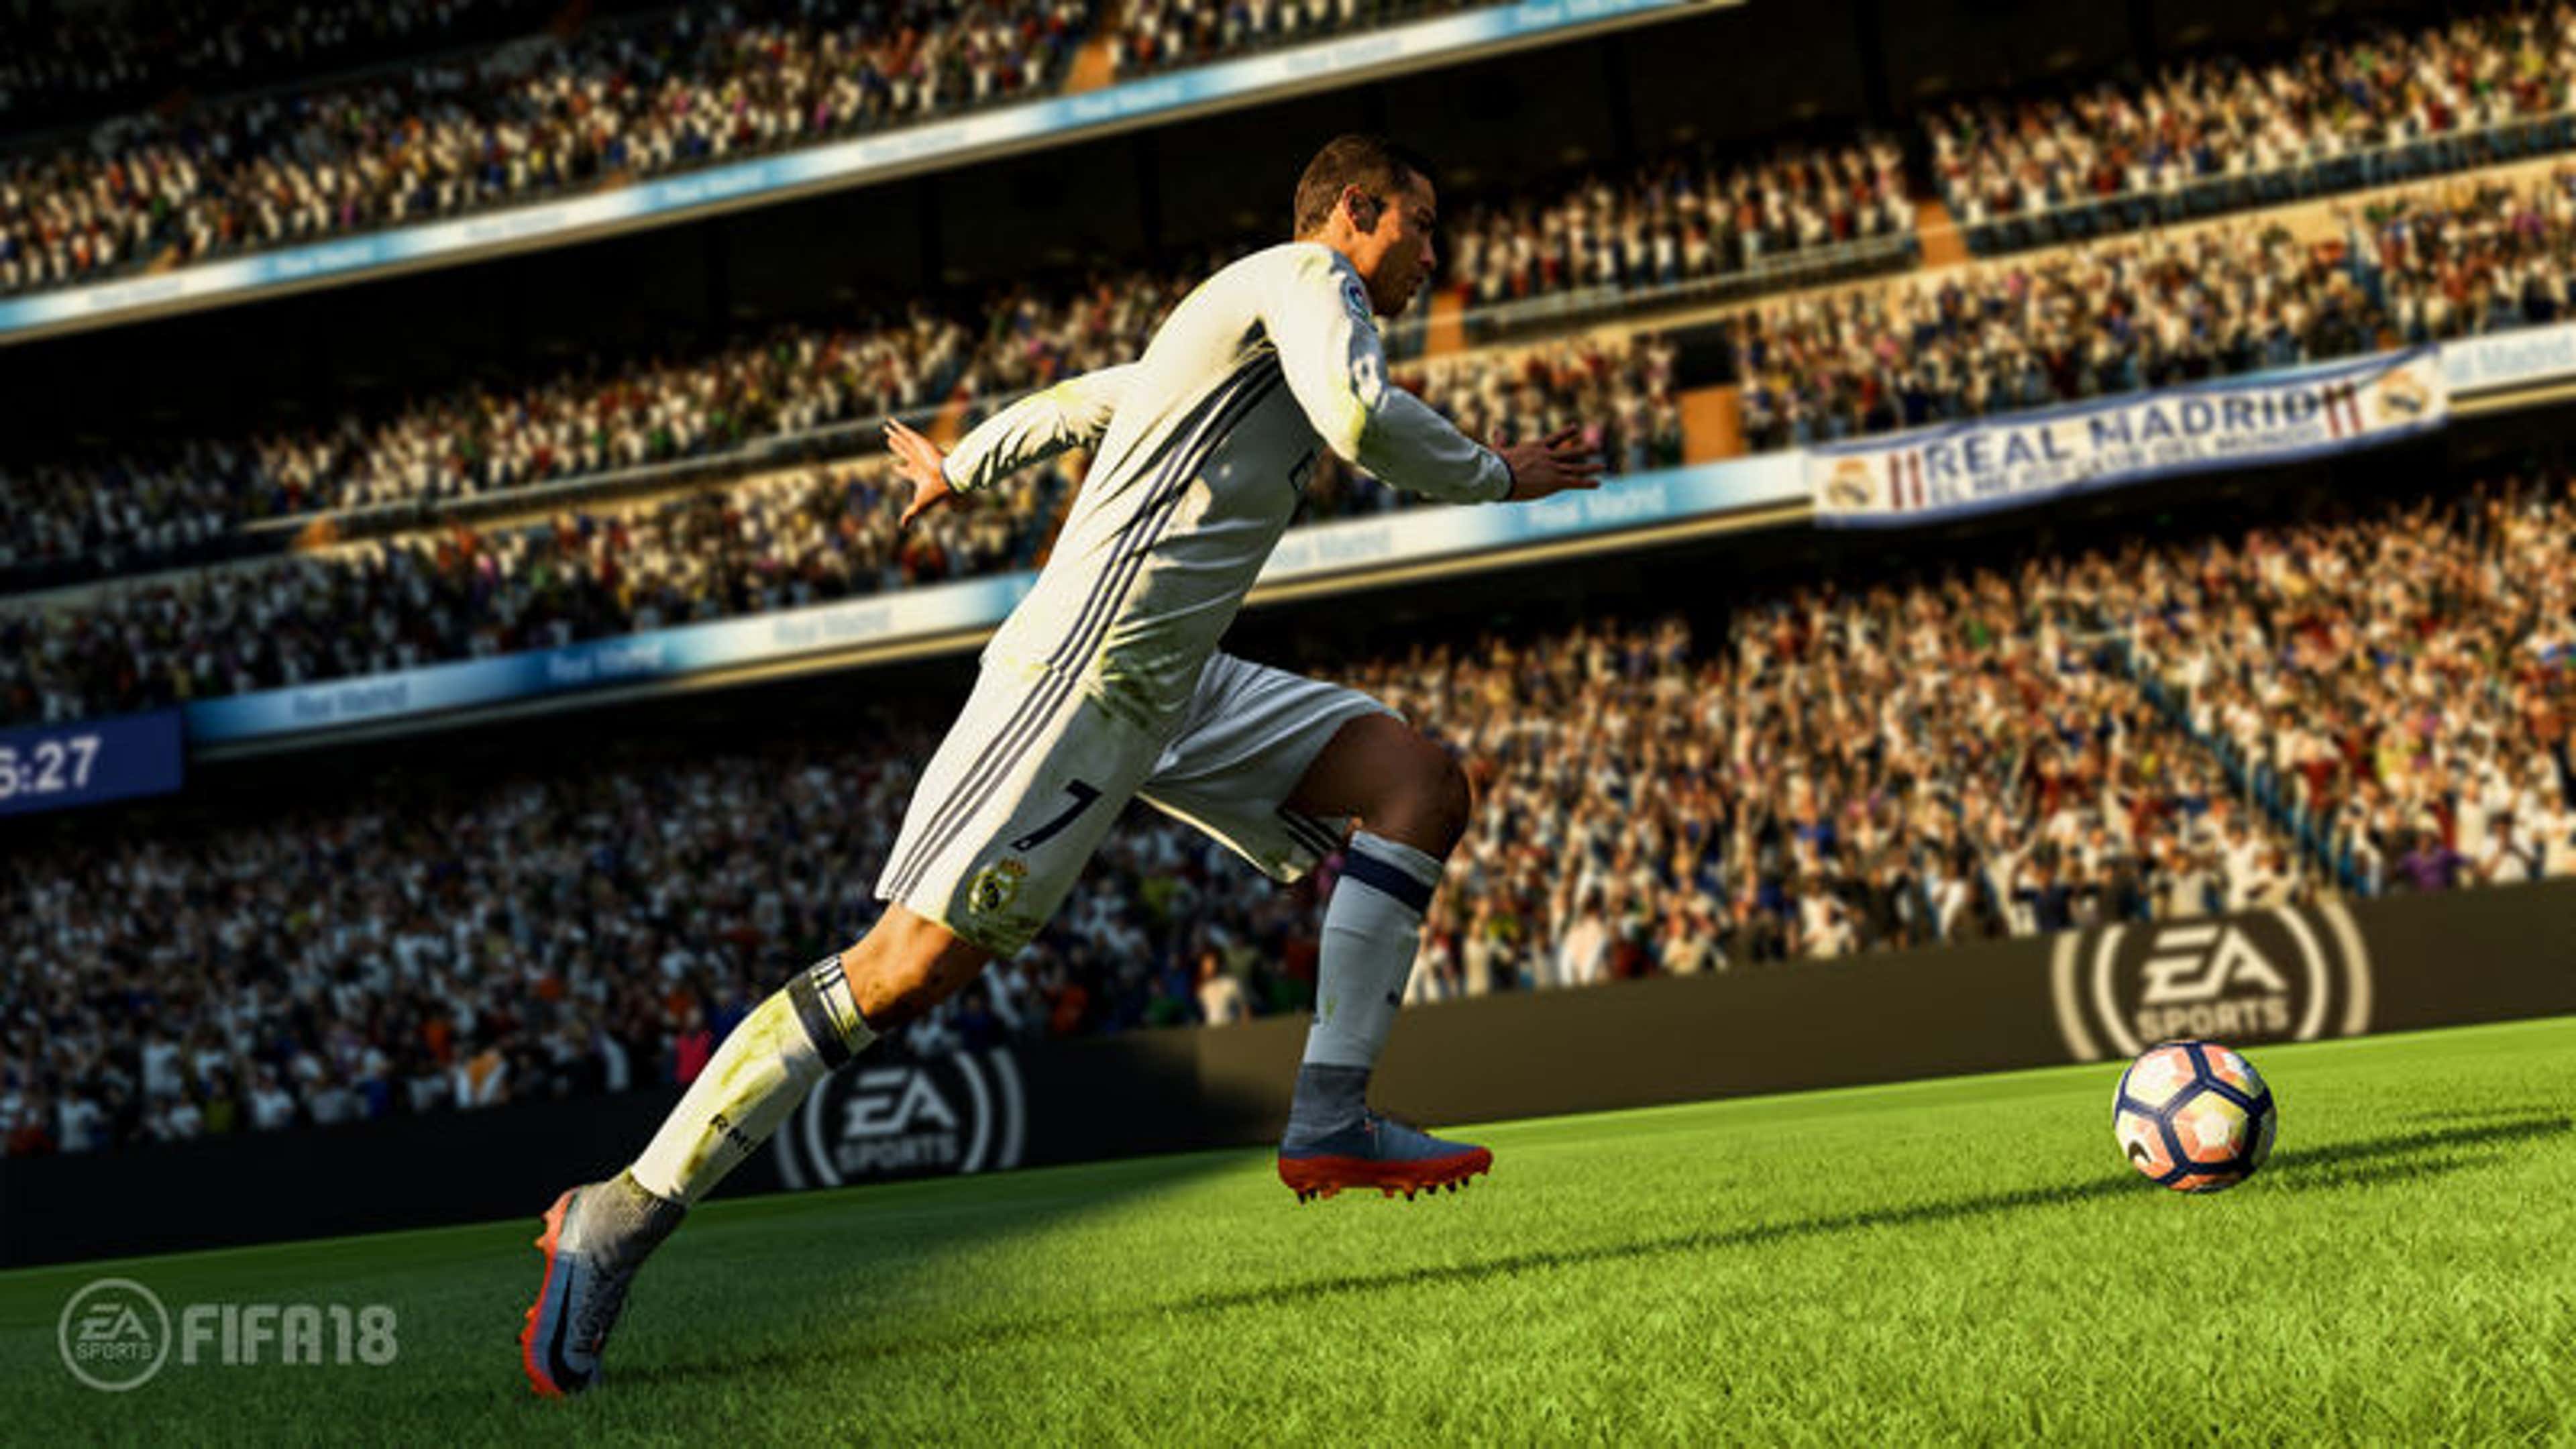 Ronaldo FIFA 18 Gameplay